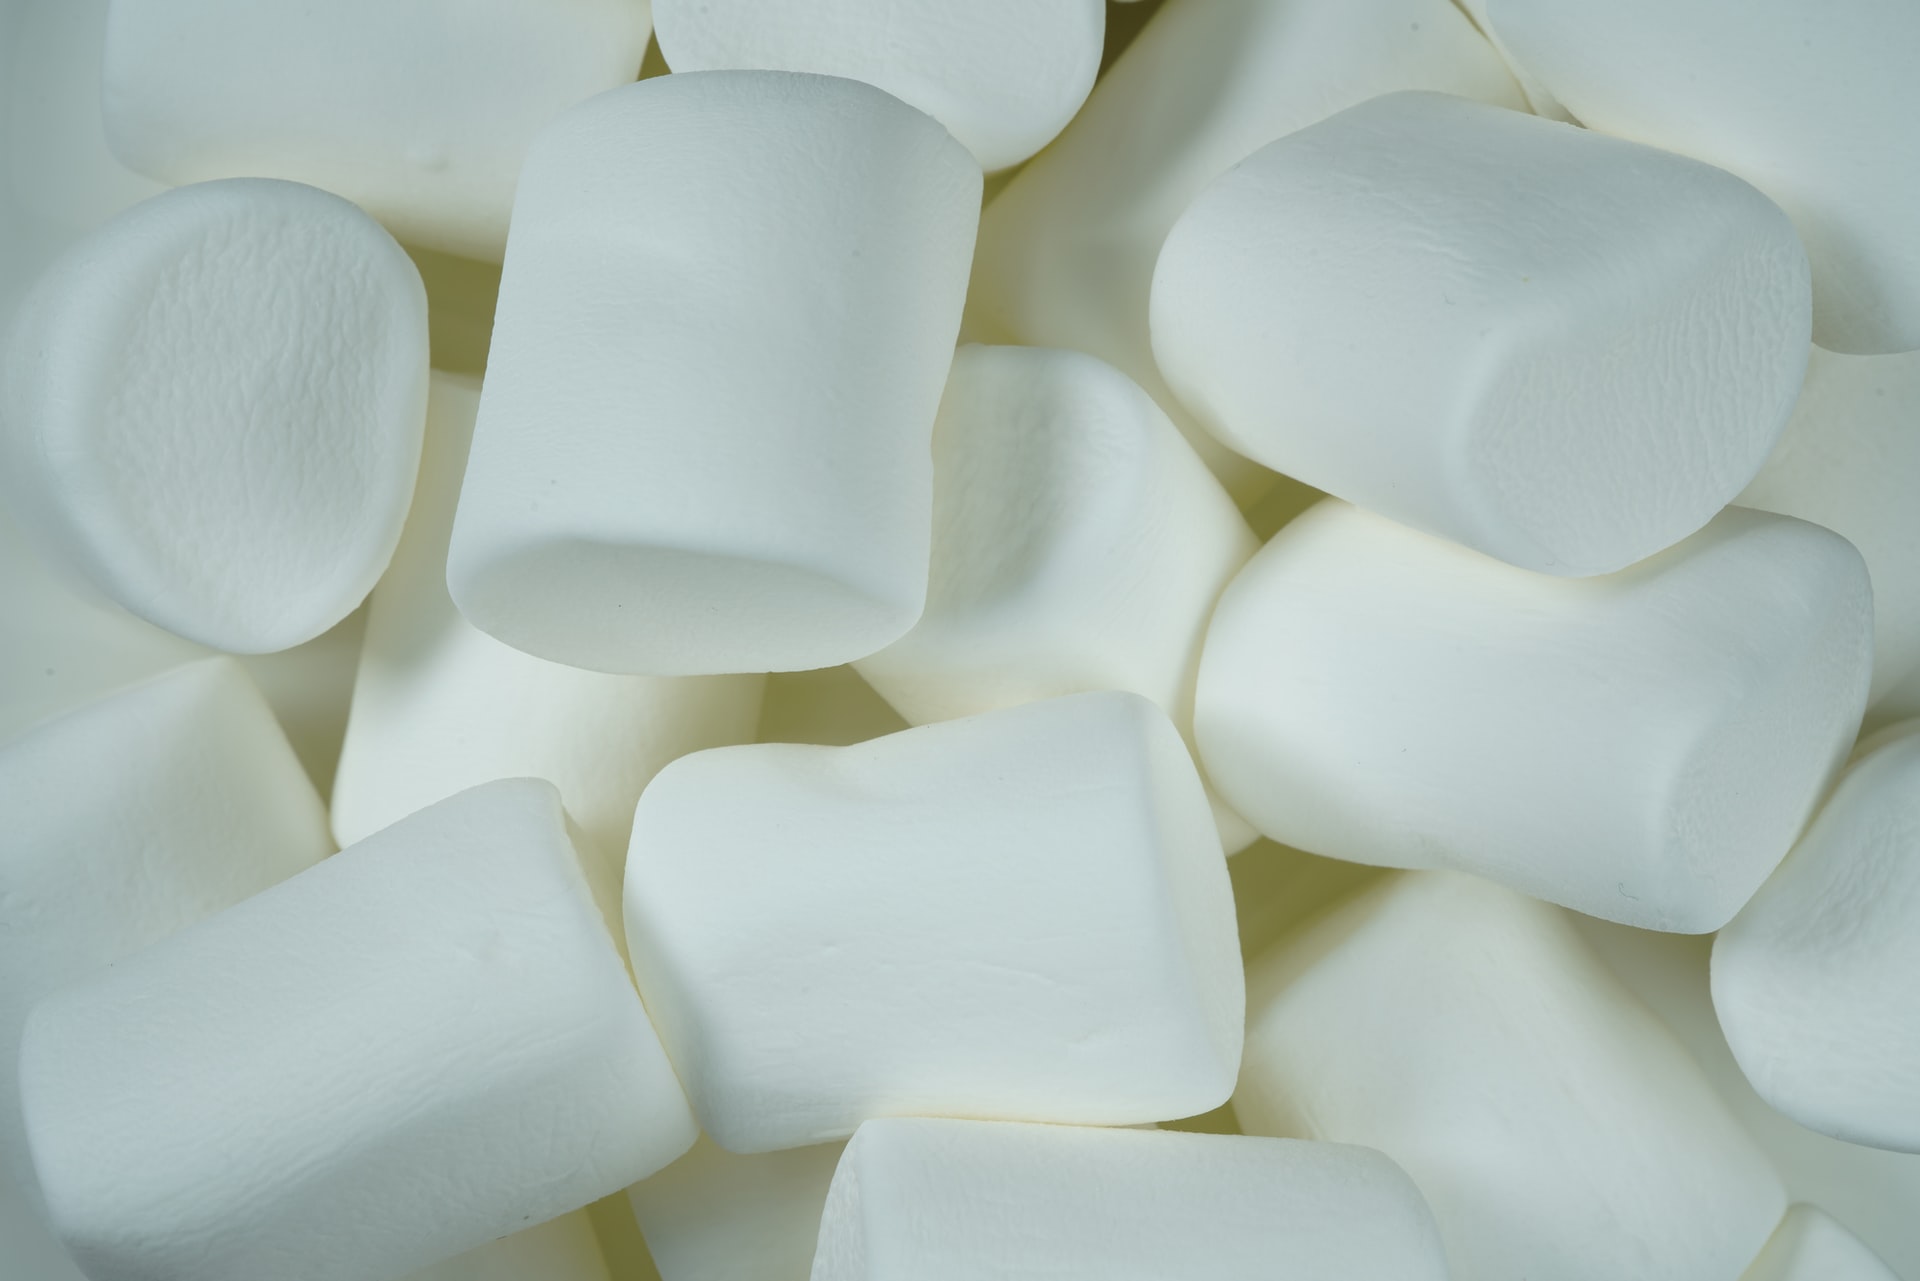 A pile of white marshmallows